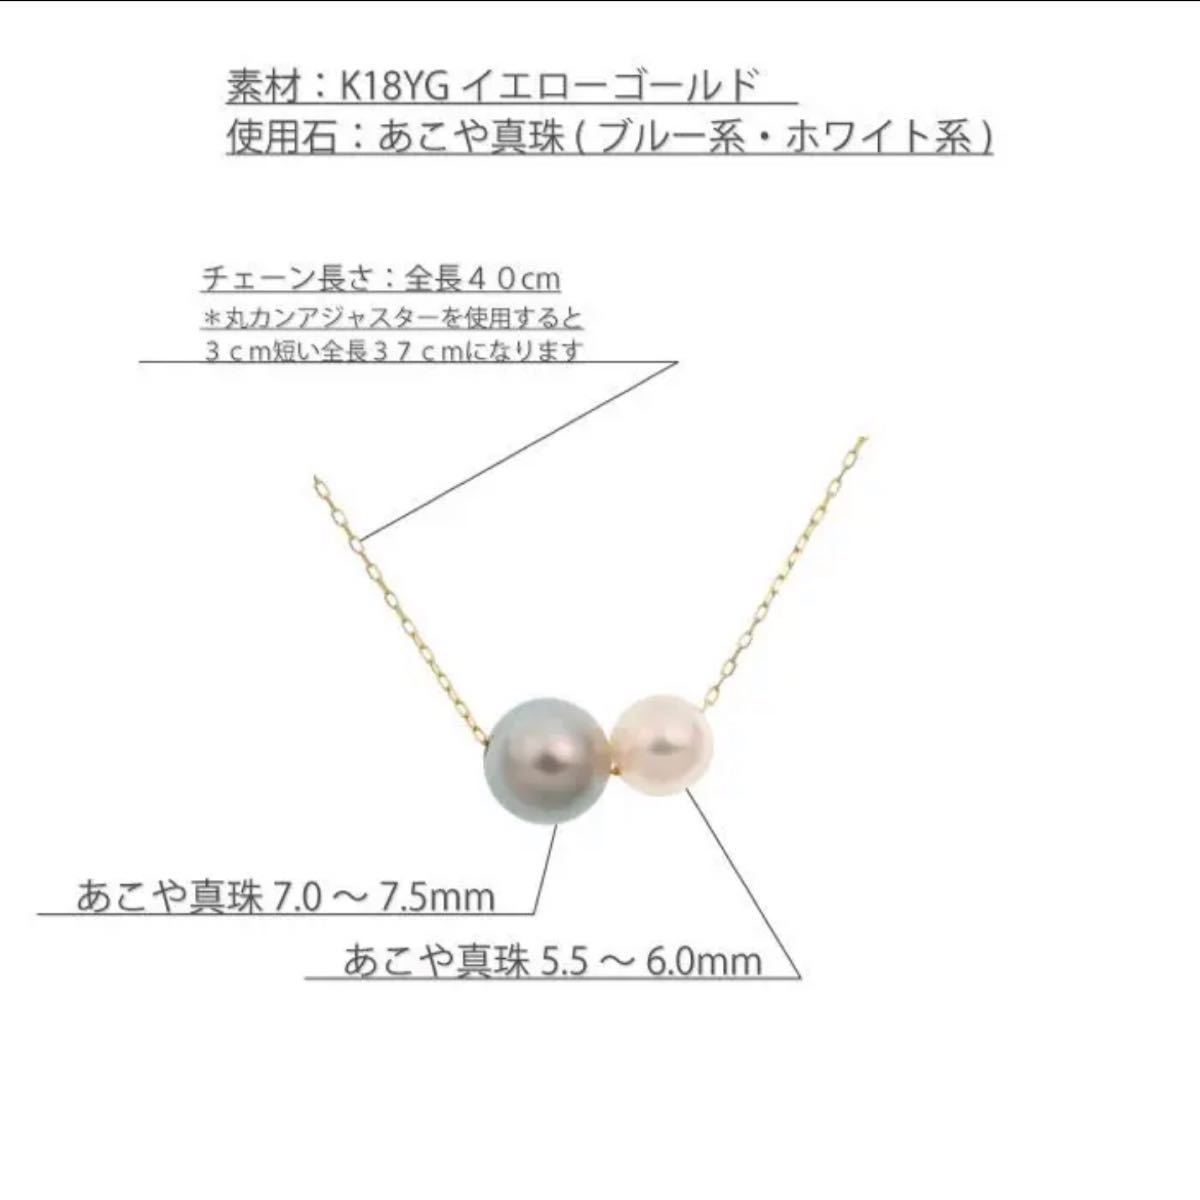 あこや真珠 2色 使用 2粒の貫通ネックレス 0.20小豆40cm18金 